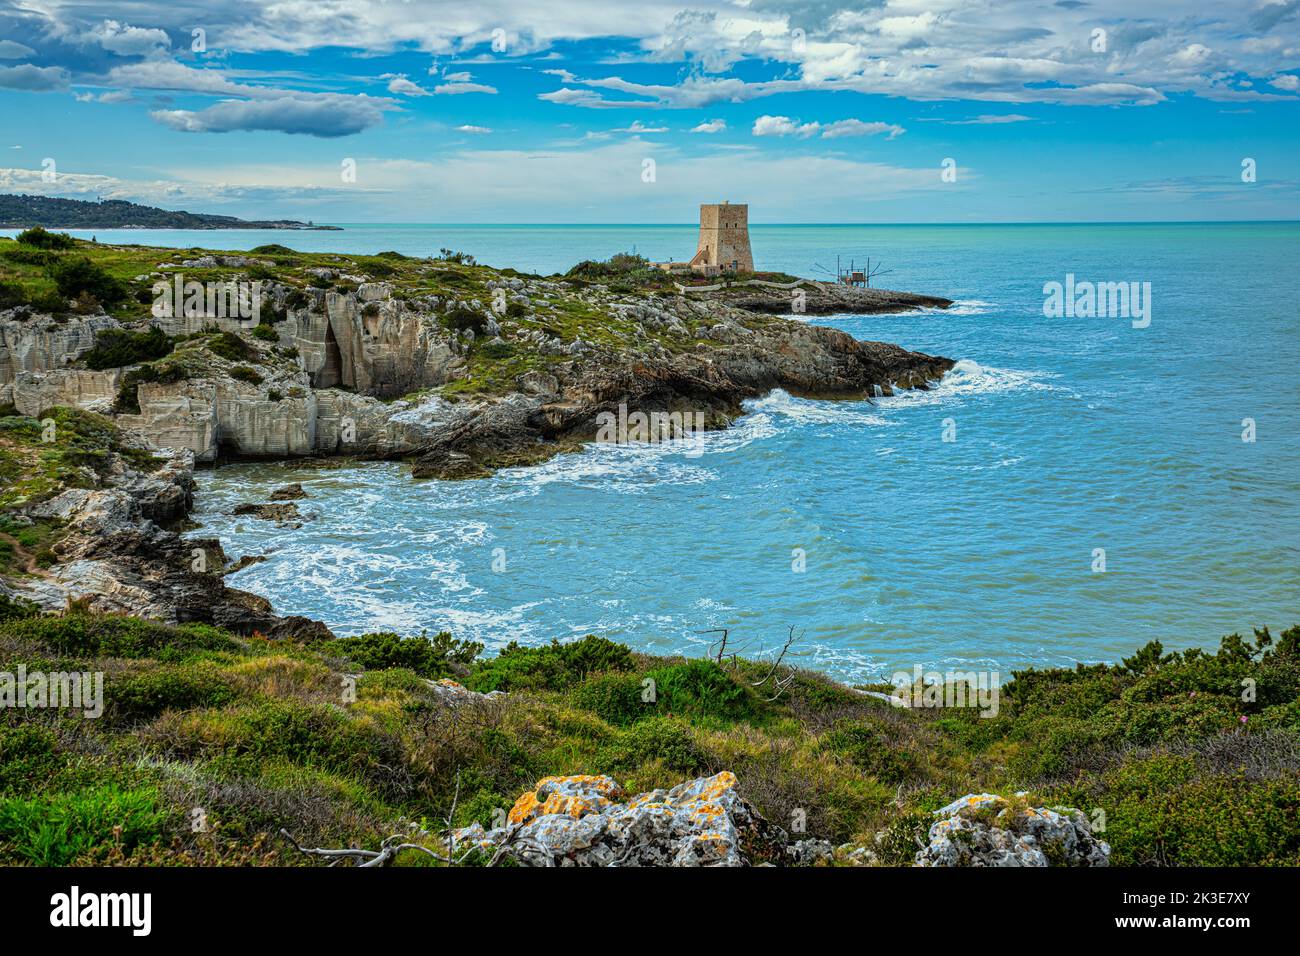 La tour de guet, probablement aussi défensive étant donné la grandeur, de Porticello dans la baie de Tufara. Vieste, province de Foggia, Puglia, Italie, Europe Banque D'Images